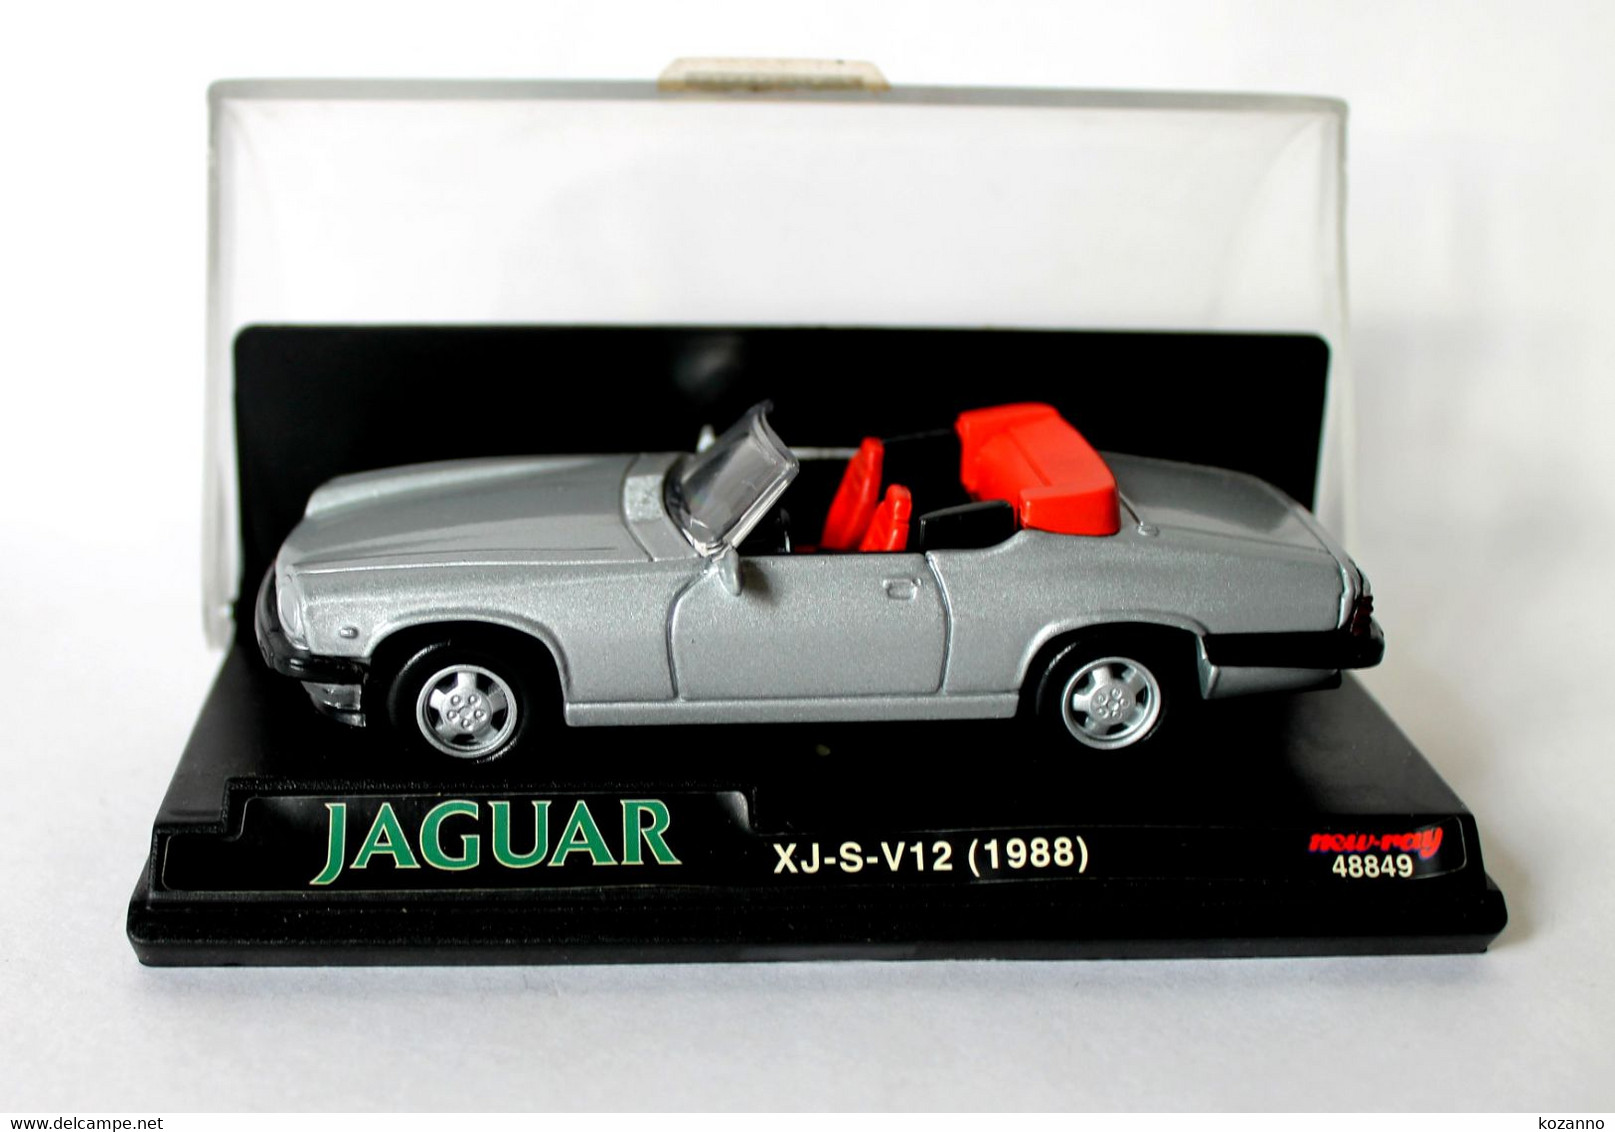 VOITURE MINIATURE - JAGUAR XJ-S-V12 1988 NEW-RAY N°48849 - ECH 1/43 - MODELE REDUIT AUTOMOBILE (47) - Corgi Toys